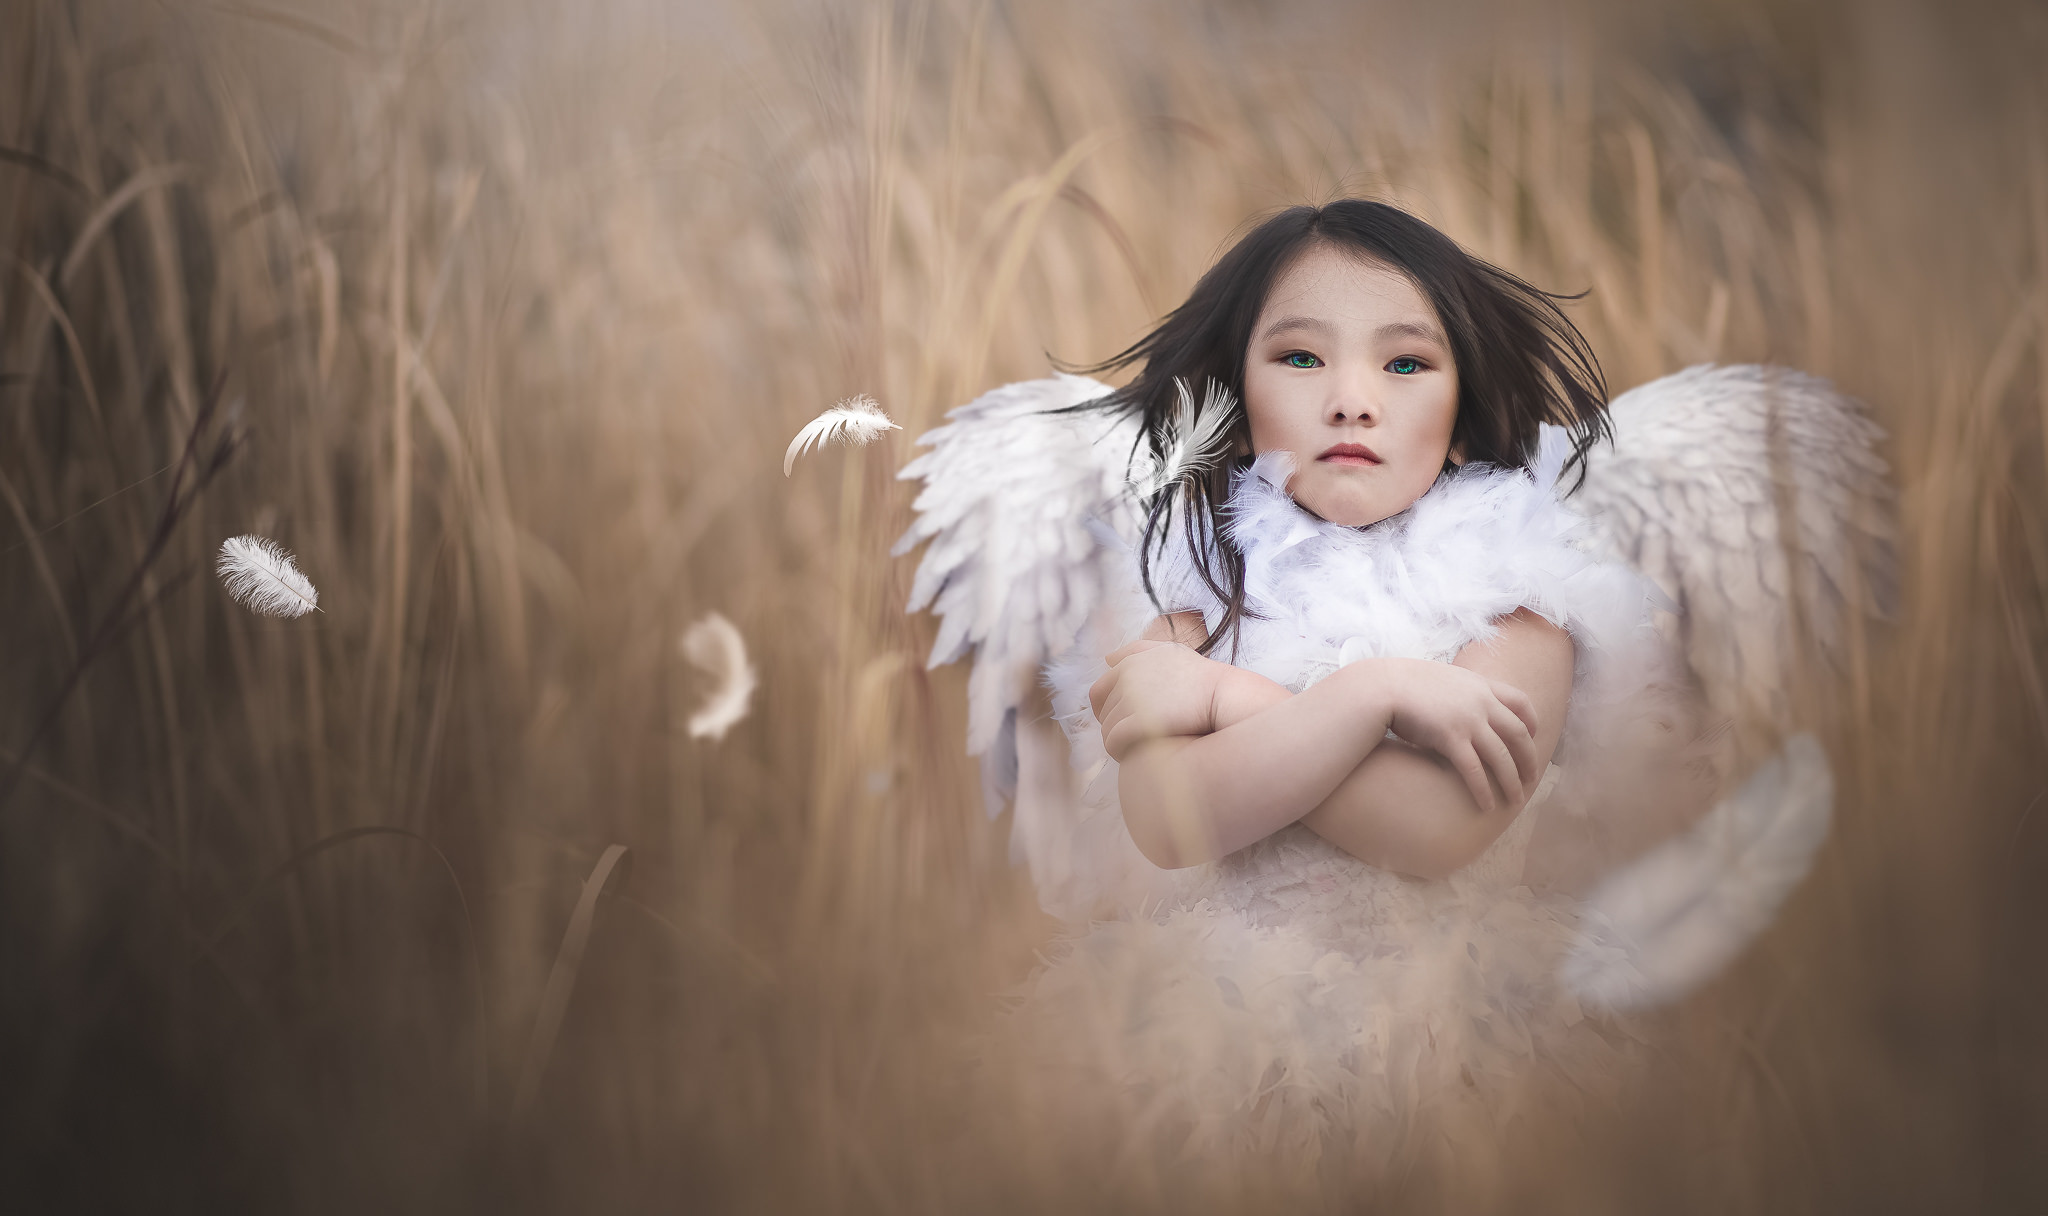 Nik little angel. Литтл Энджел. Ангел. Крылья для детей. Девушка - ангел.